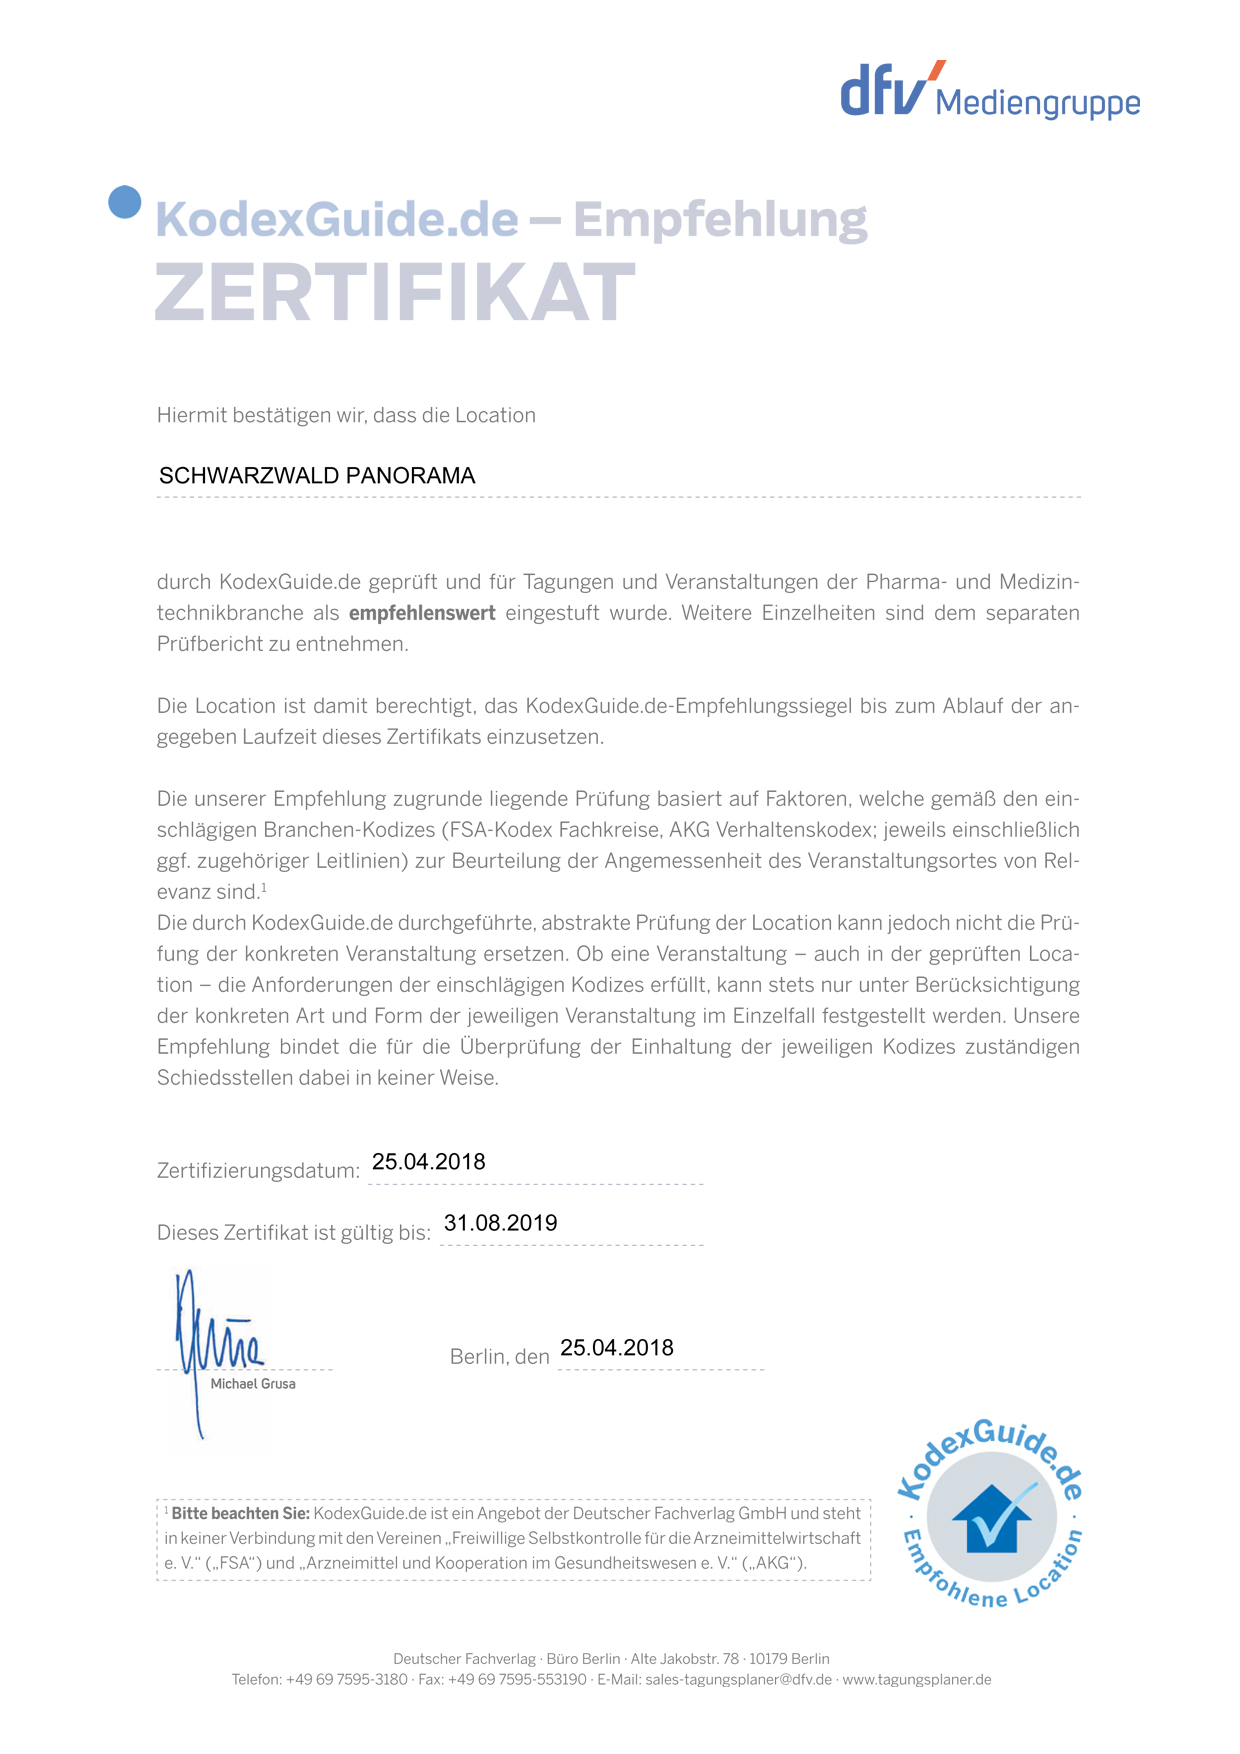 Zertifikat KodexGuide.de 2018/2019 für das Schwarzwald Panorama als empfehlenswerte Location für Tagungen und Veranstaltungen